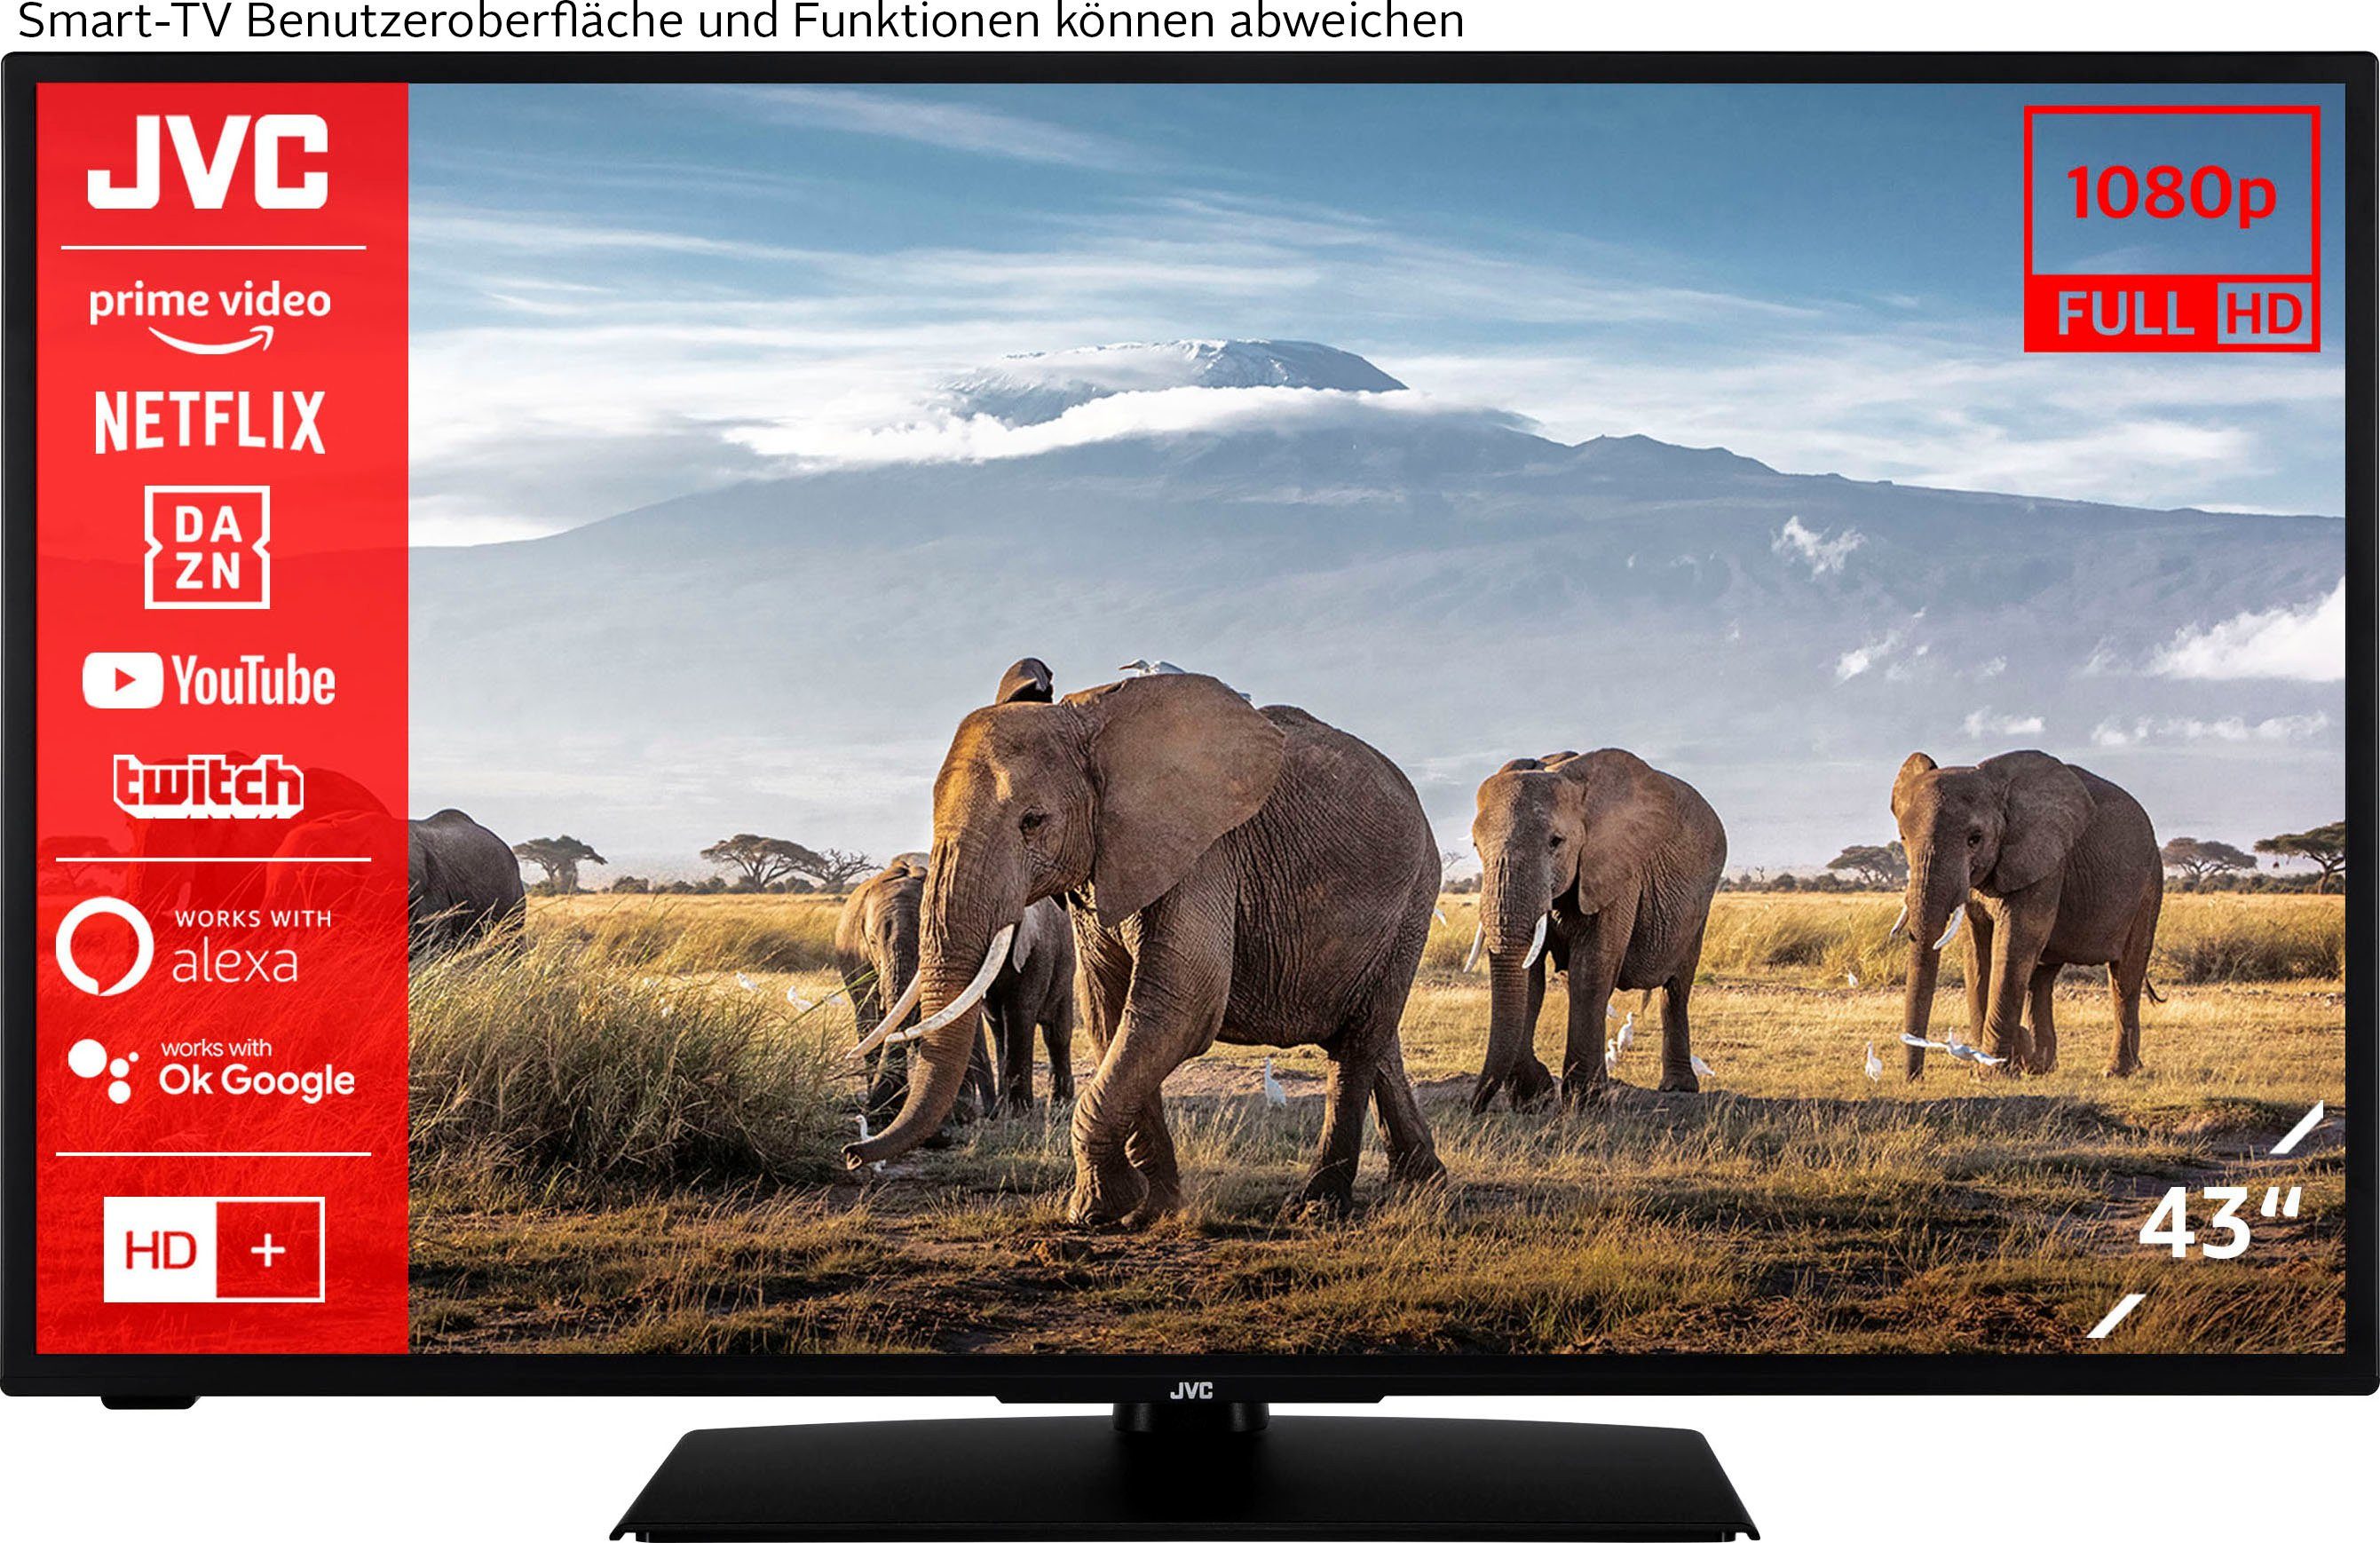 JVC LT-43VF5156 LED-Fernseher (108 cm/43 Zoll, Full HD, Smart-TV) | alle Fernseher